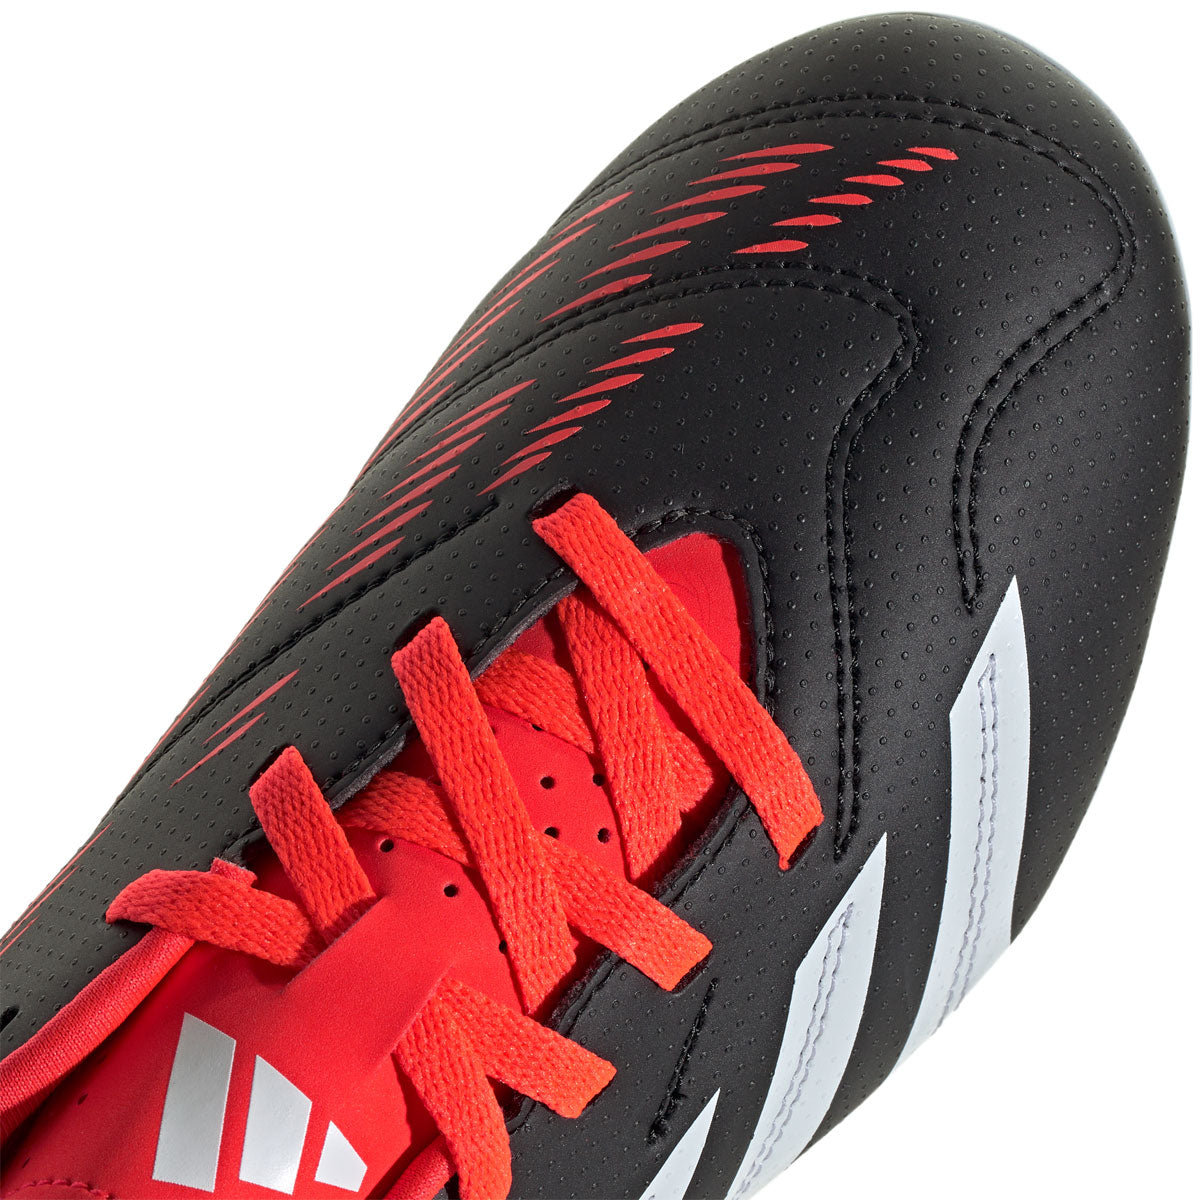 adidas Predator Club FG Football Boots - Youth - Black/White/Solar Red